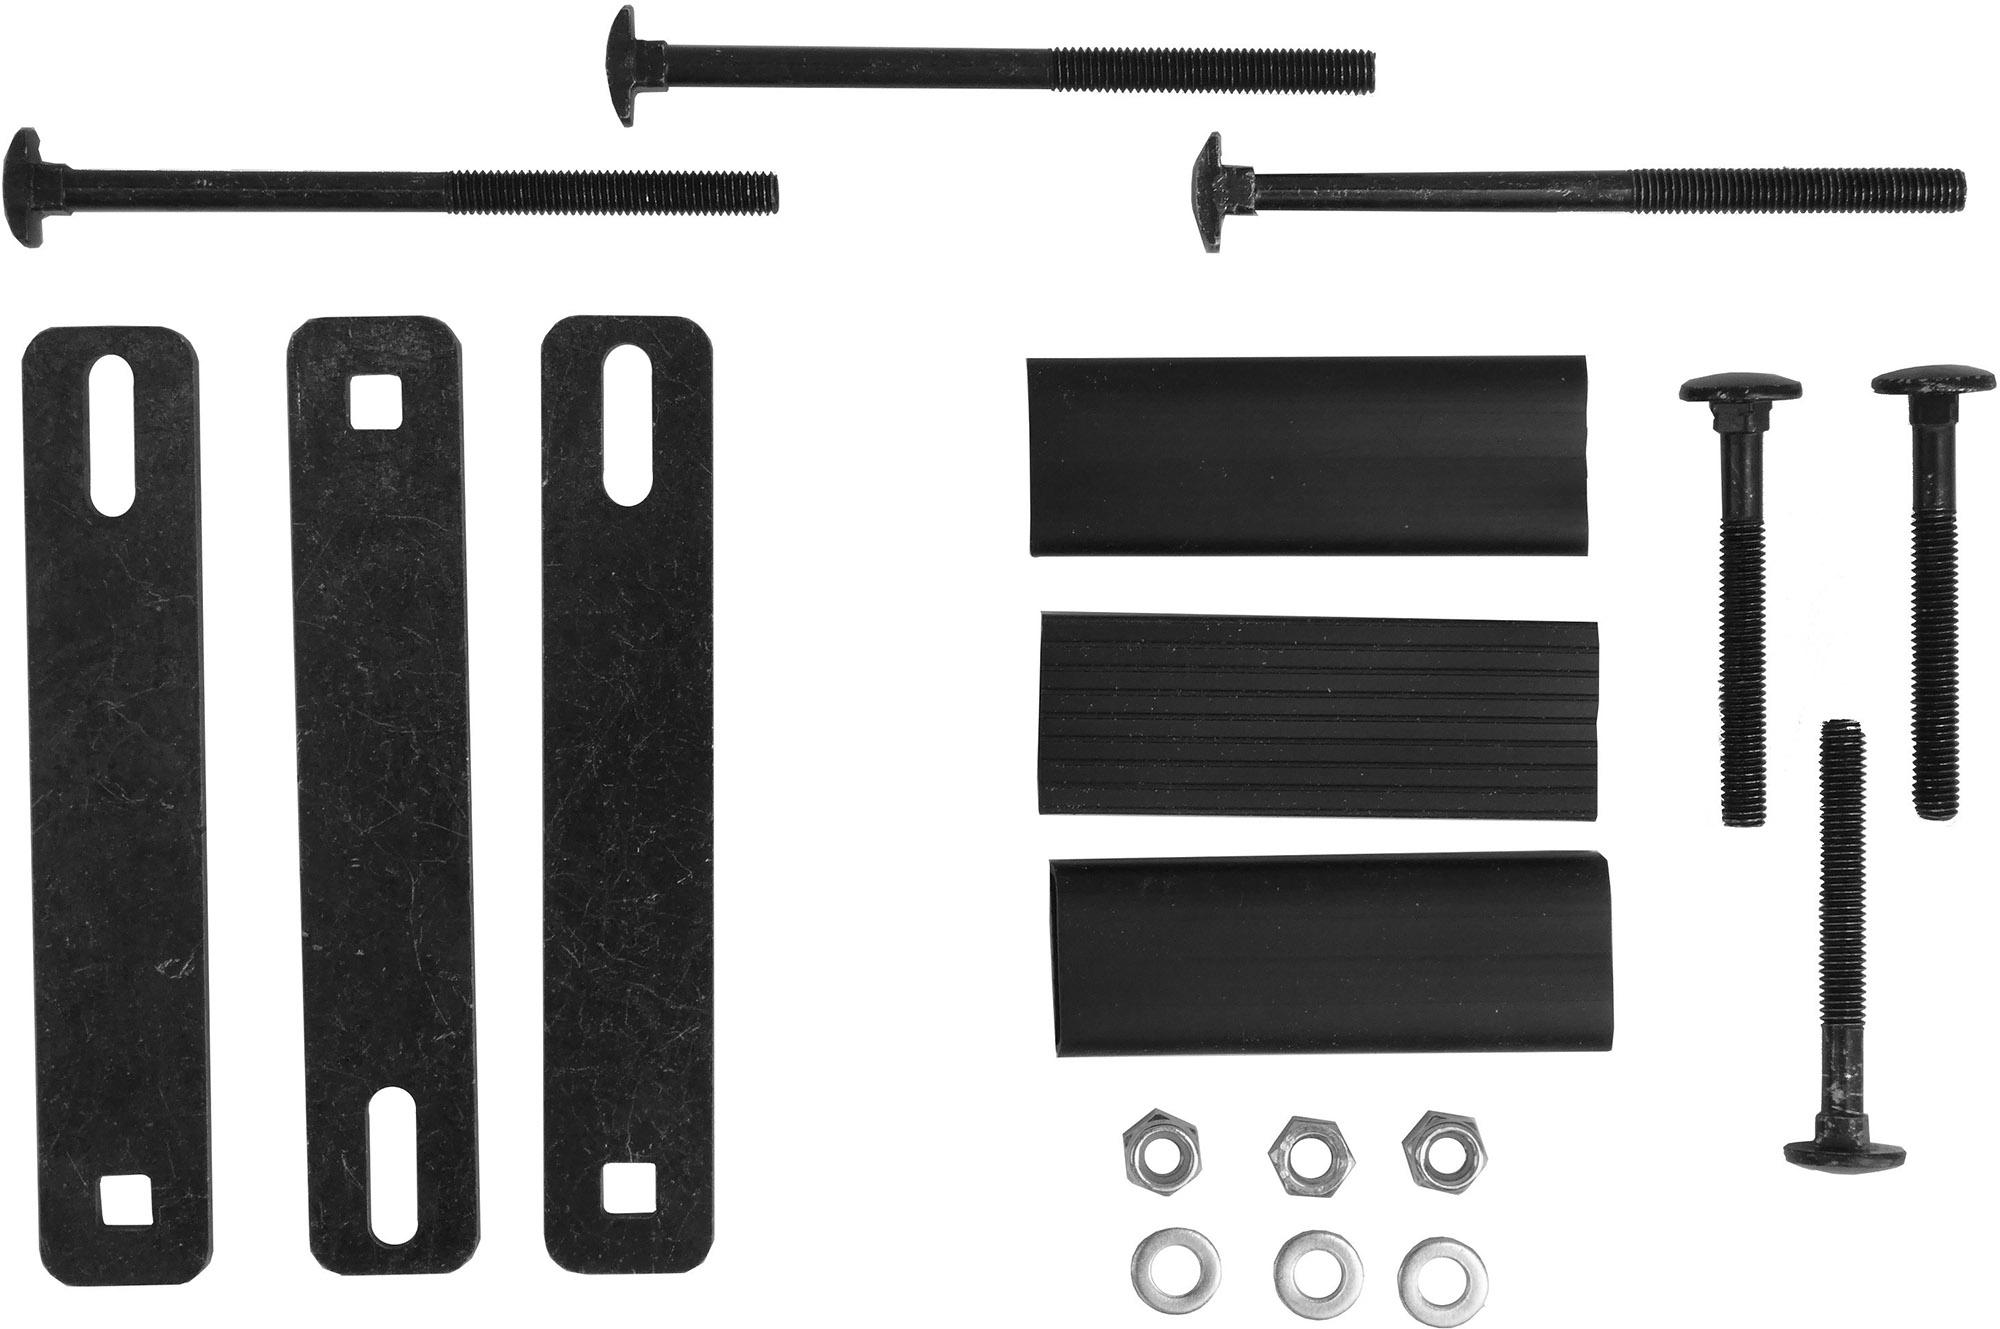 Peruzo Square Bars Fixing Kit (art.875) - Black